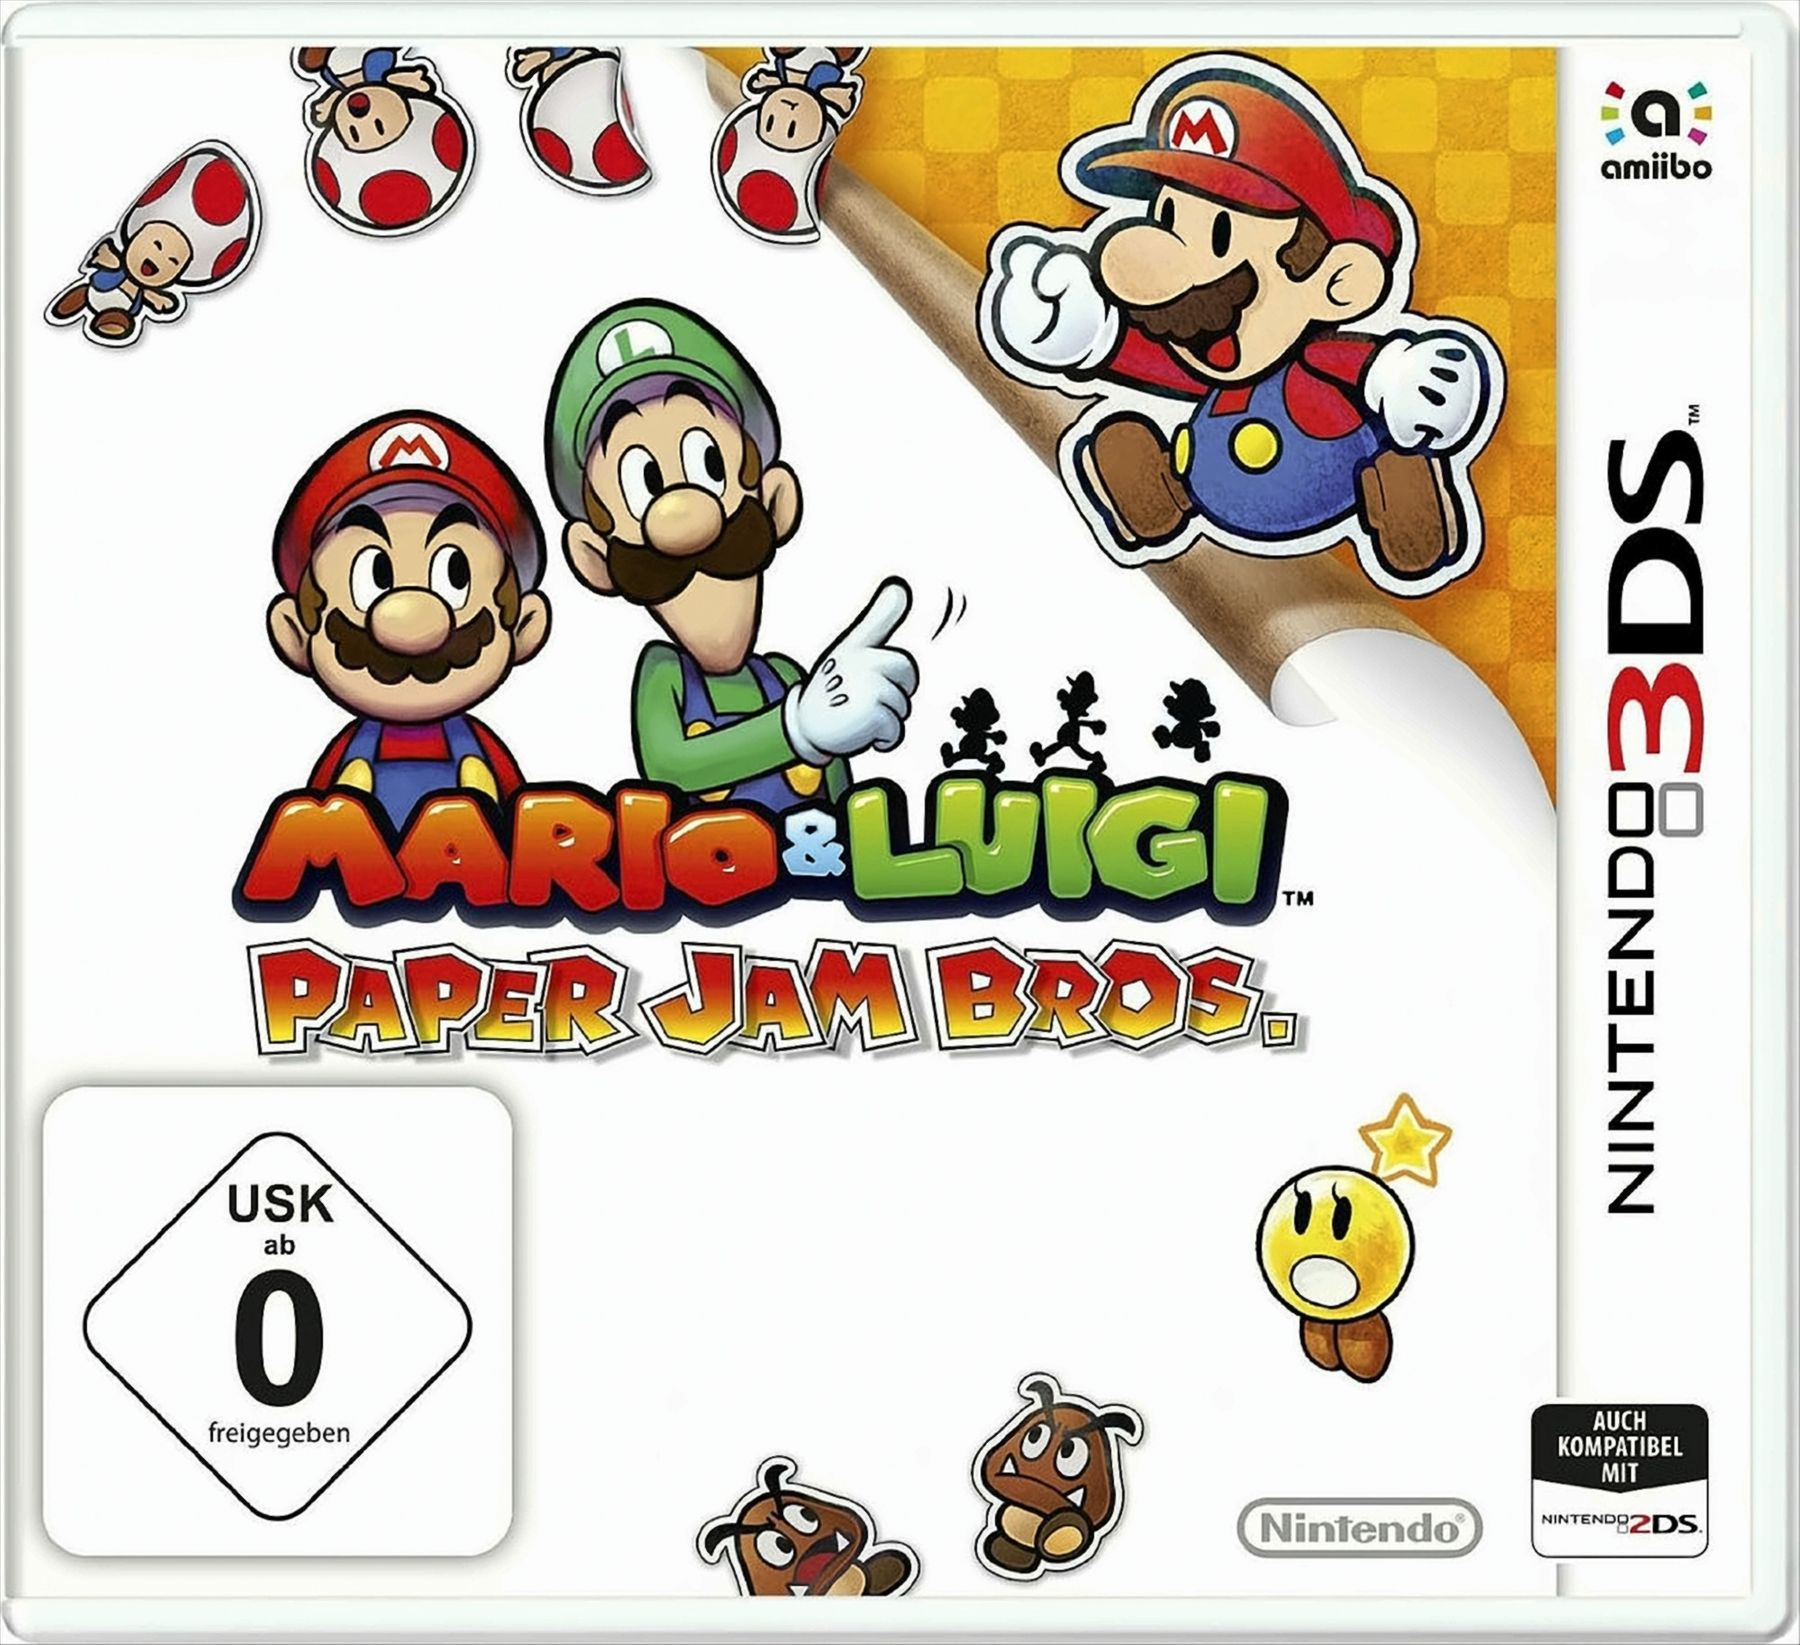 & [Nintendo - Luigi: 3DS] Jam Mario Bros. Paper